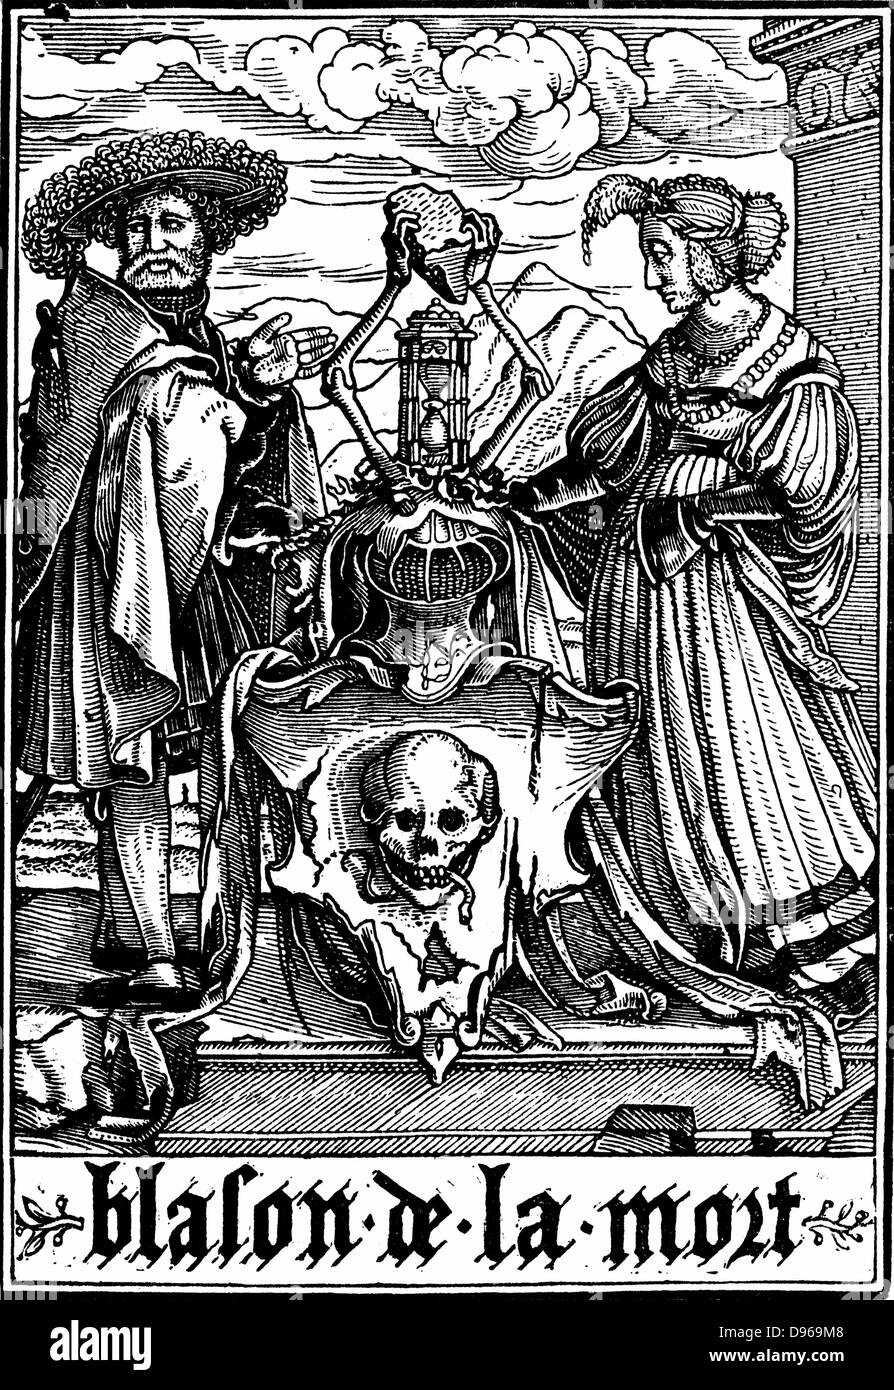 Les bras de la mort. De Hans Holbein le Jeune 'Les Simulachres de la Mort" (La danse de mort, Totentanz). Série d'illustrations à la suite de la tradition de la morale médiévale joue . Gravure sur bois, 1538 Banque D'Images